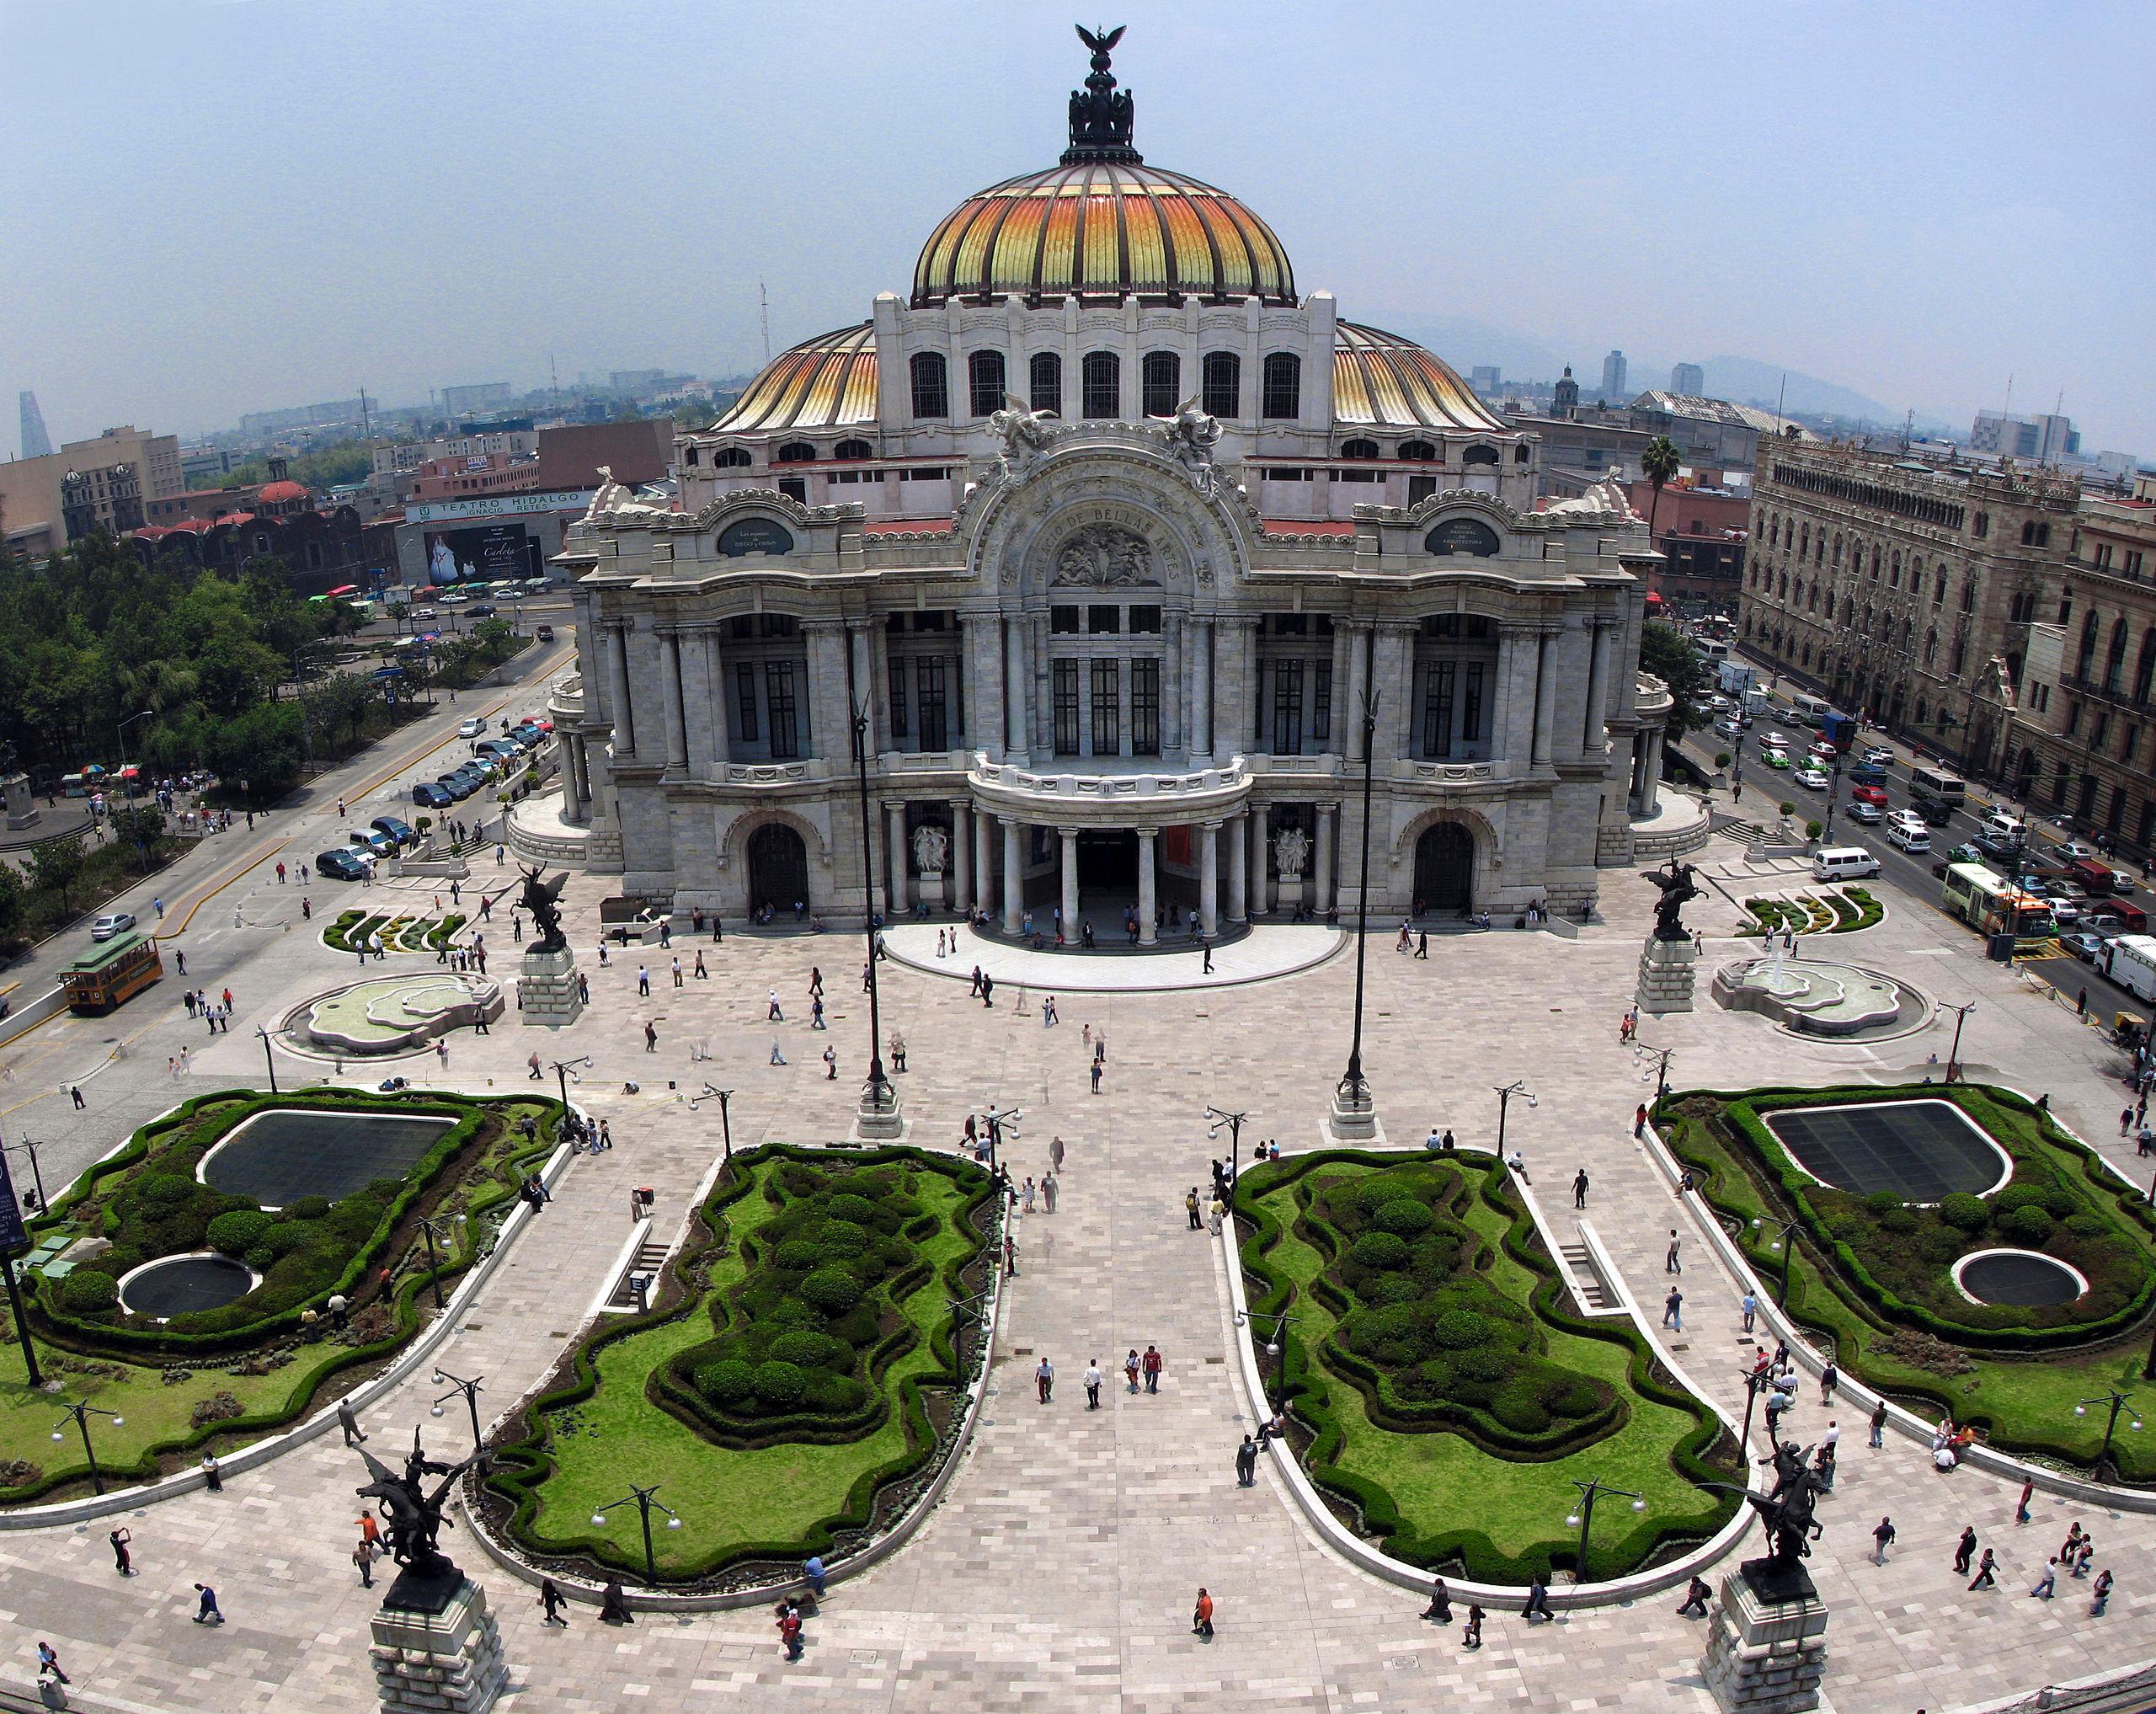 Πόλη του Μεξικού - Παλάτι των Καλών Τεχνών της Πόλης του Μεξικού65b